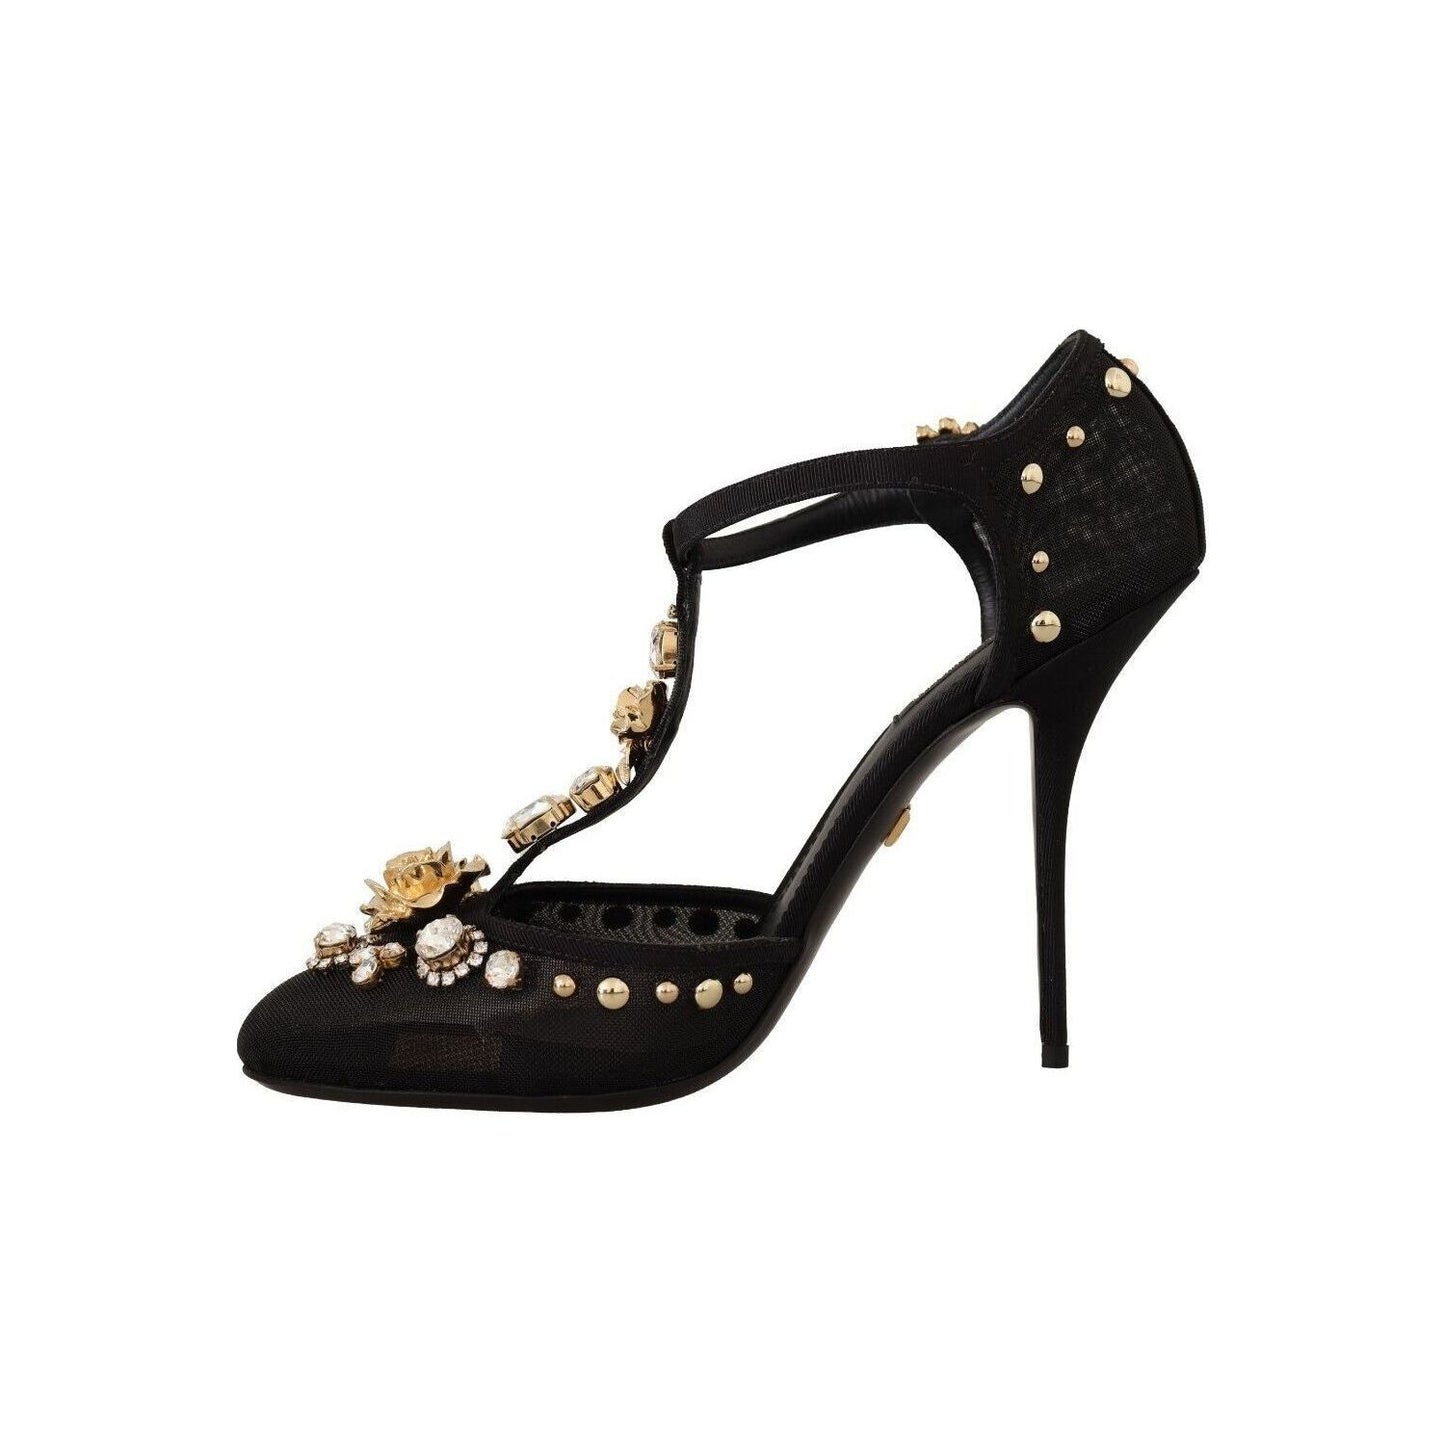 Dolce & Gabbana Elegant Crystal-Embellished Mesh T-Strap Pumps black-mesh-crystals-t-strap-heels-pumps-shoes s-l1600-3-120-71eac466-b80.jpg